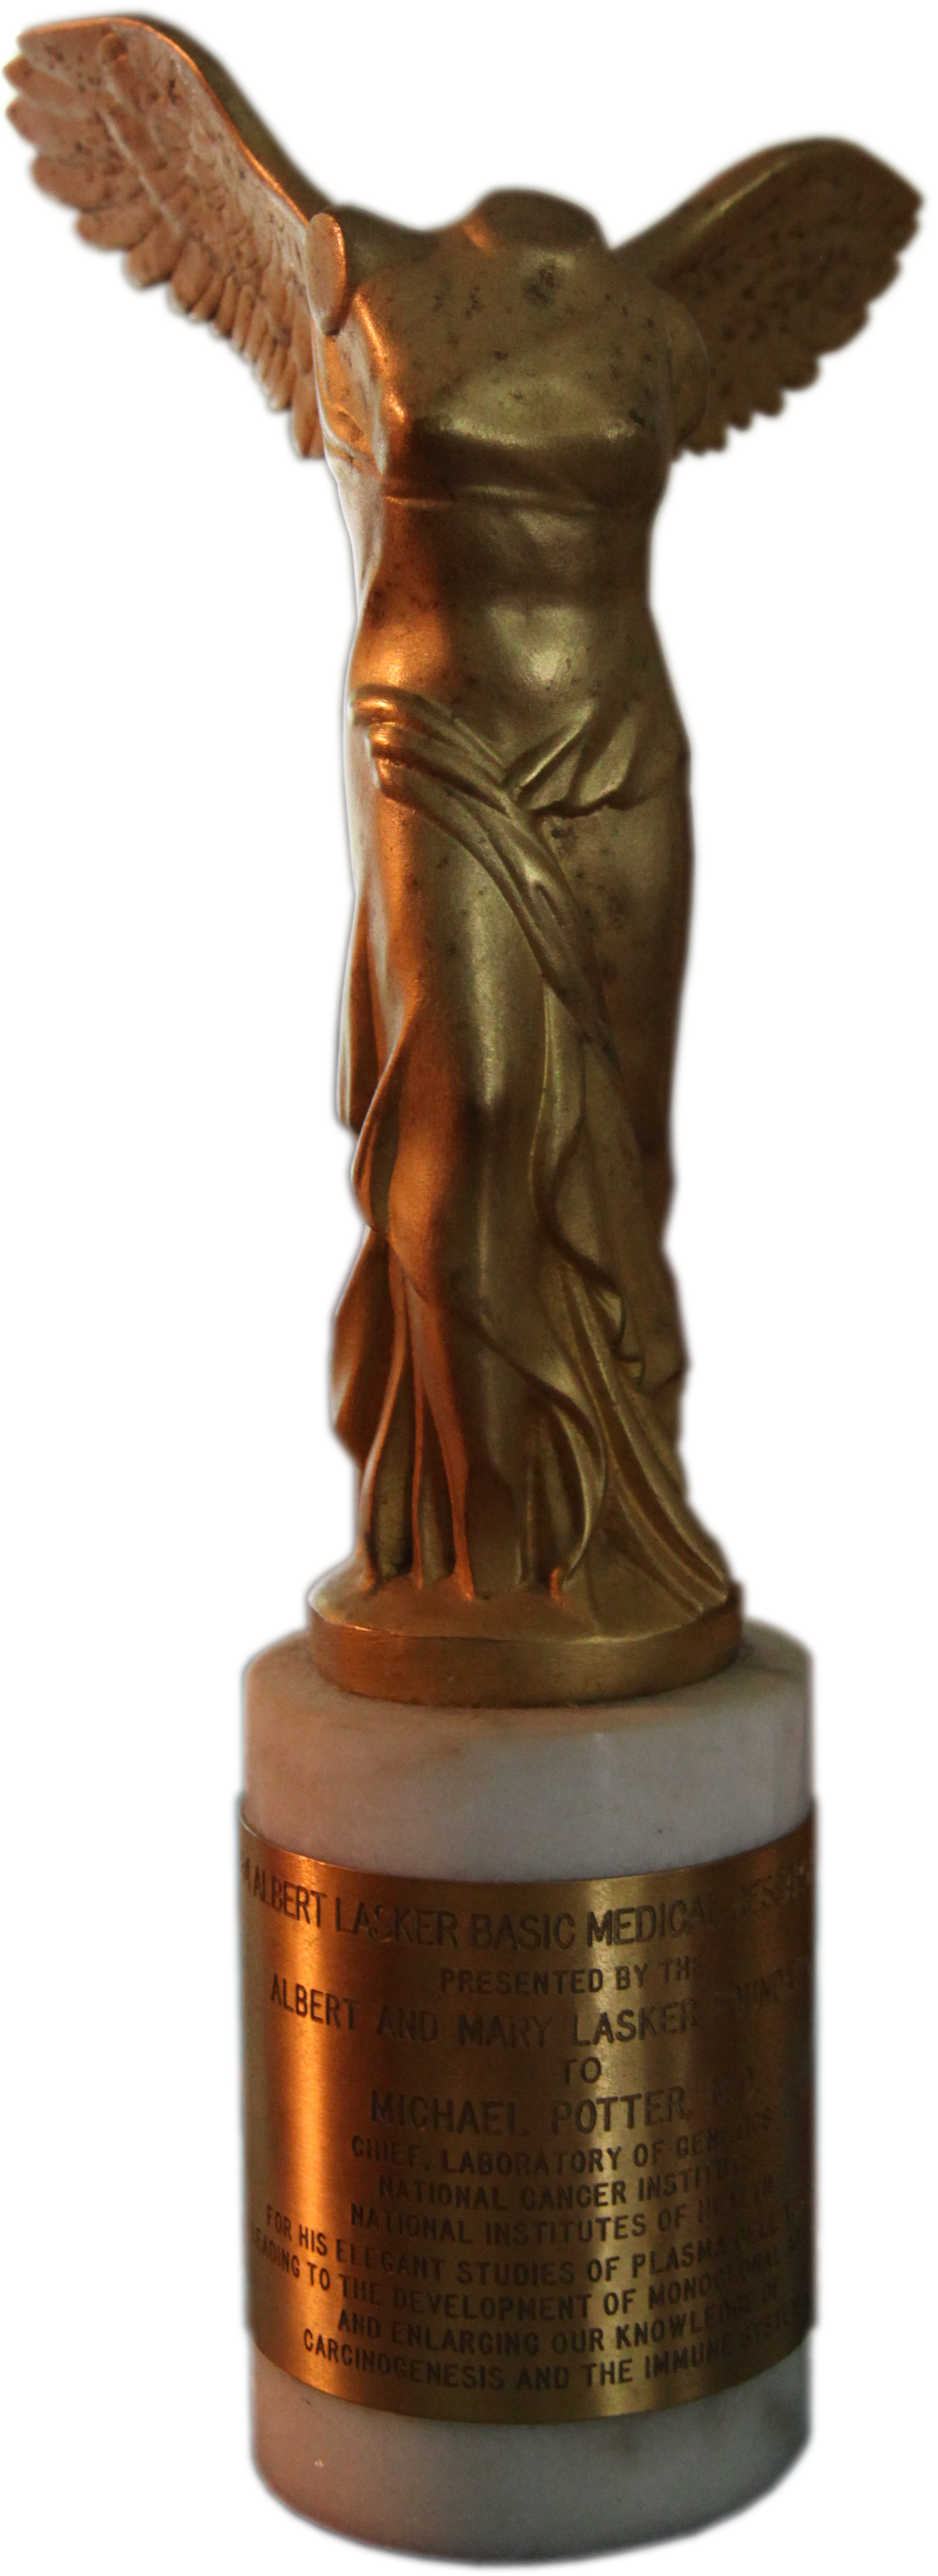 Lasker Award statuette